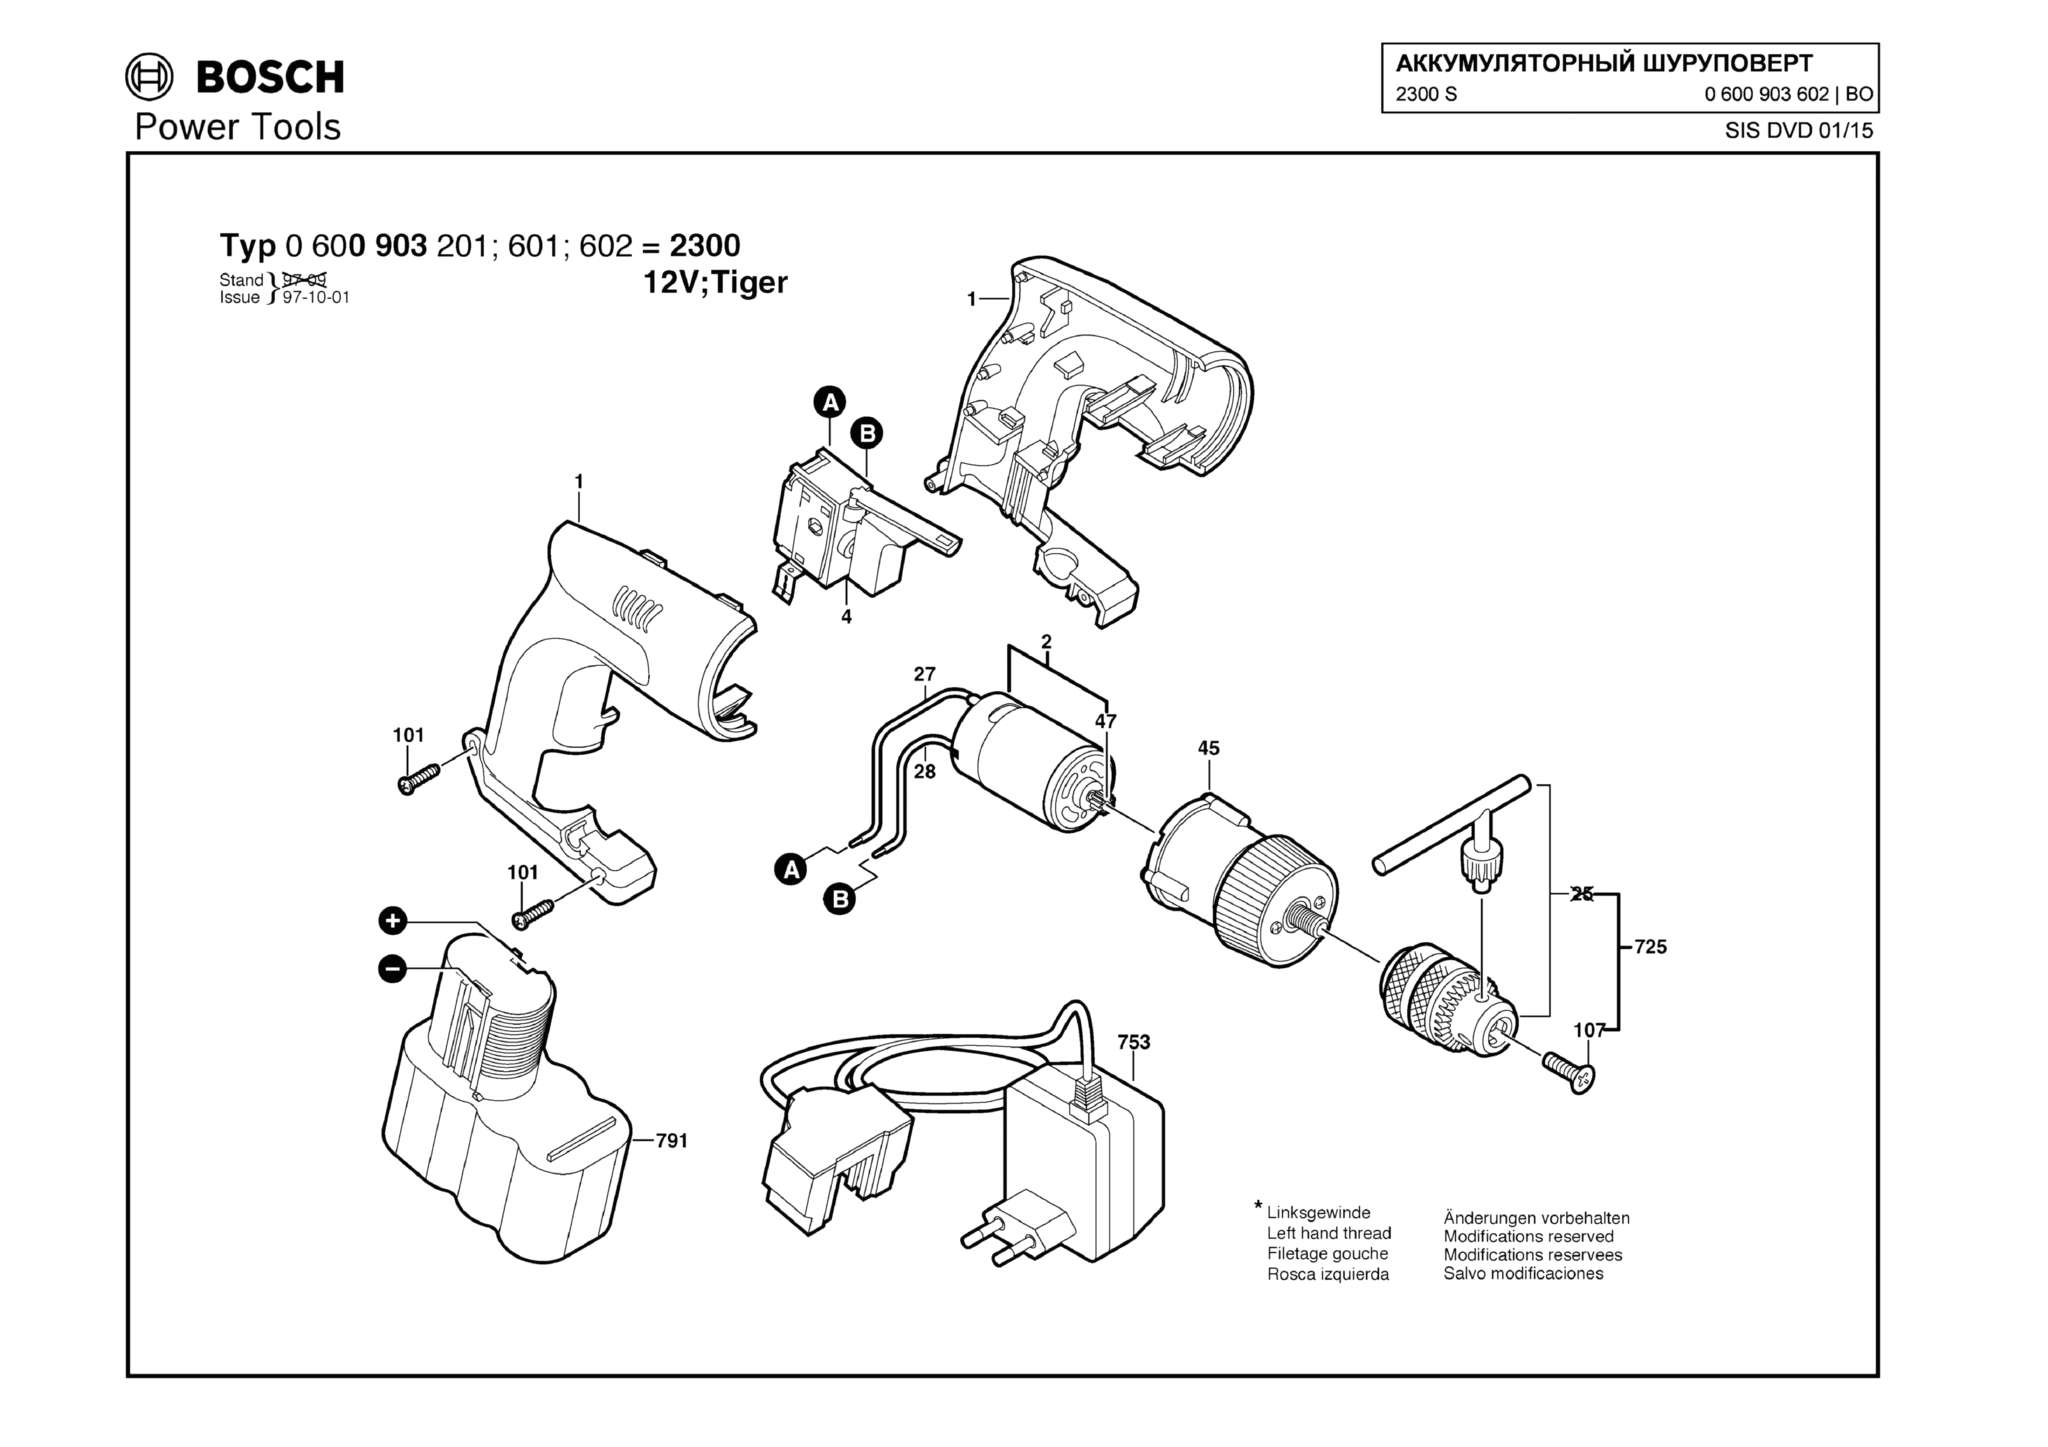 Запчасти, схема и деталировка Bosch 2300 S (ТИП 0600903602)